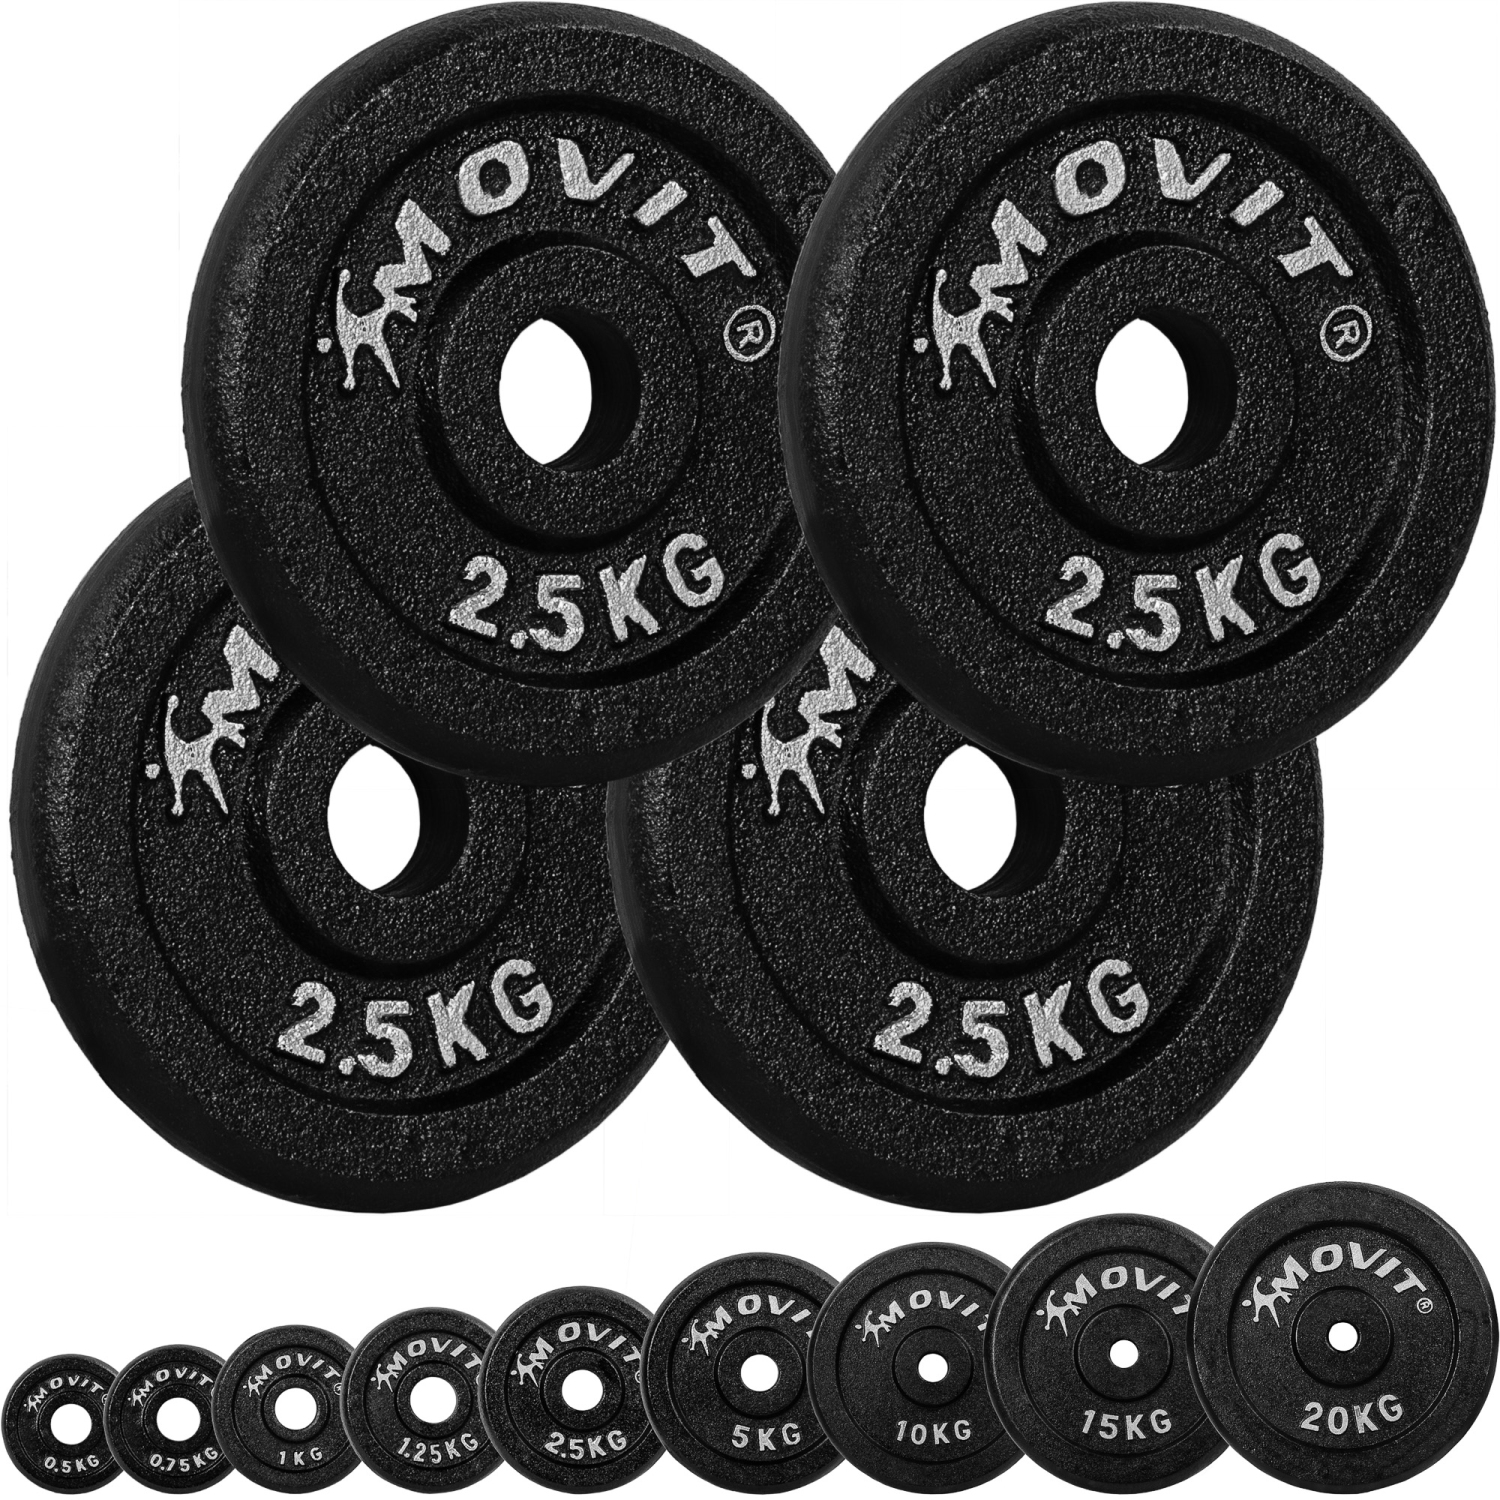 Gewichten set – Voor fitness – Schijven – 30/31 mm – 4x 2.5 kg – Zwart